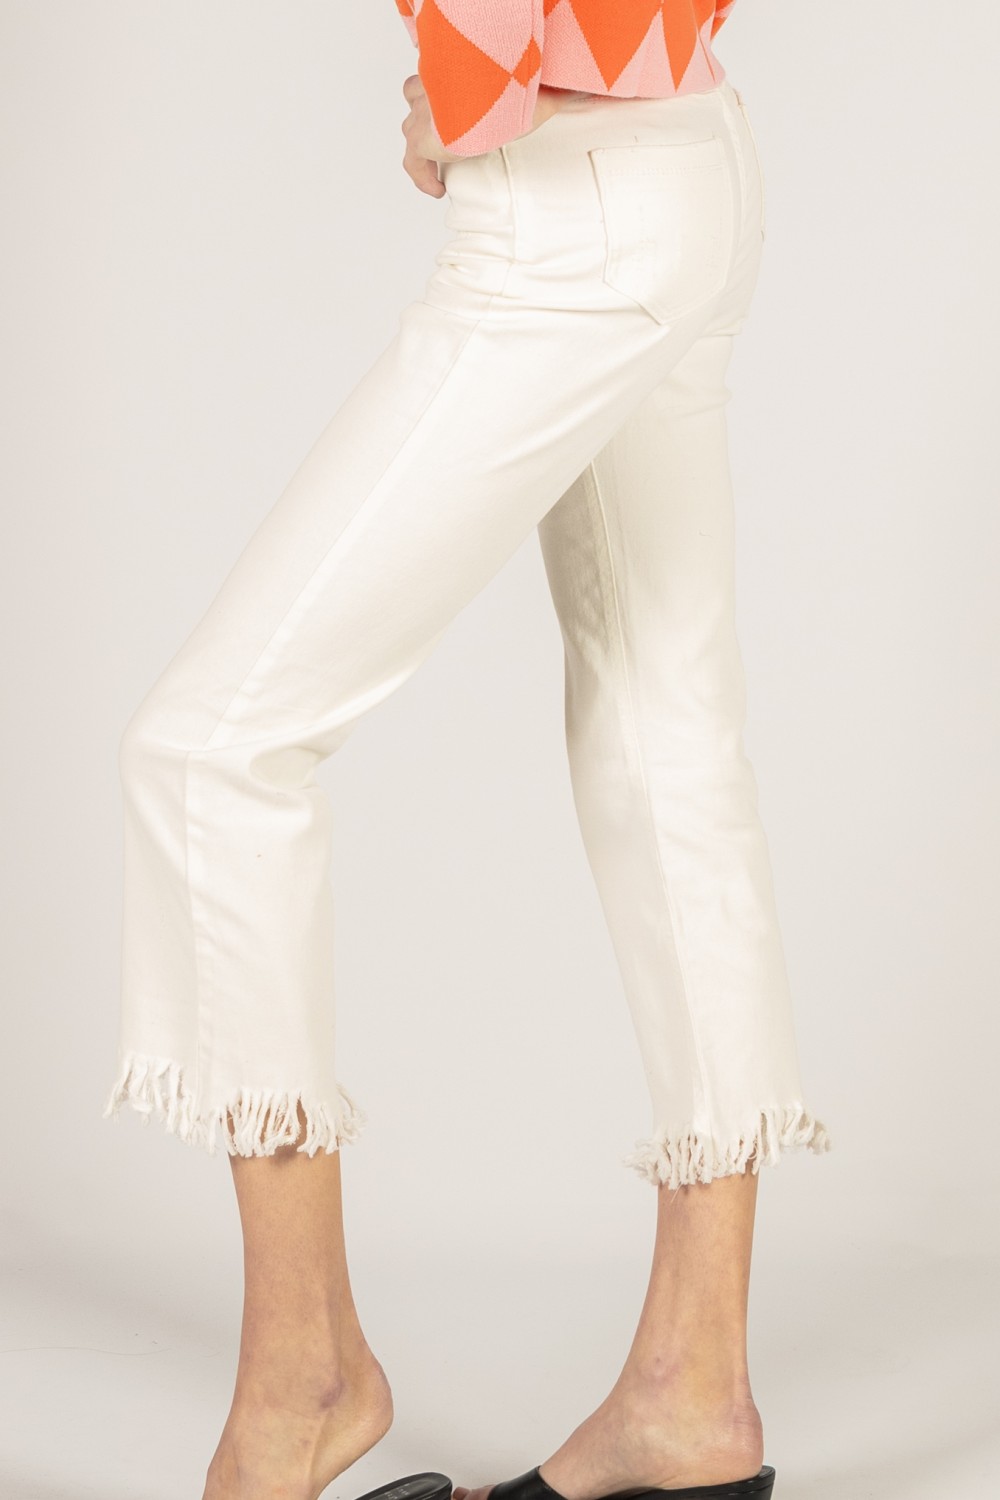 White Fringe Straight Leg Capris: Women's White Cotton Capri